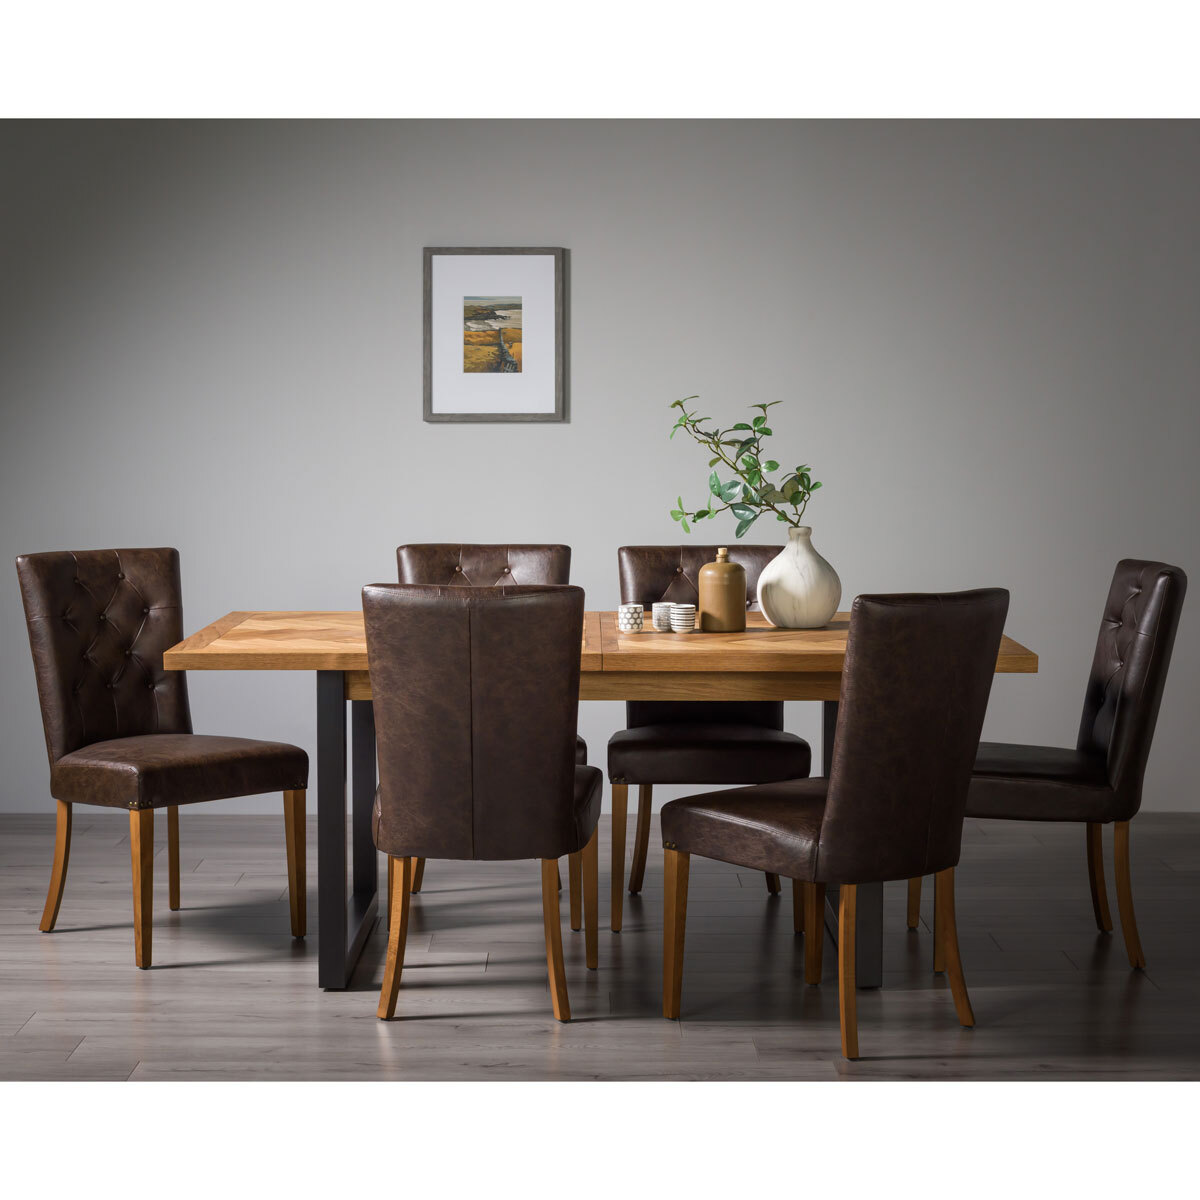 Bentley Designs Herringbone Rustic Oak Extending Dining Table 6 Chairs